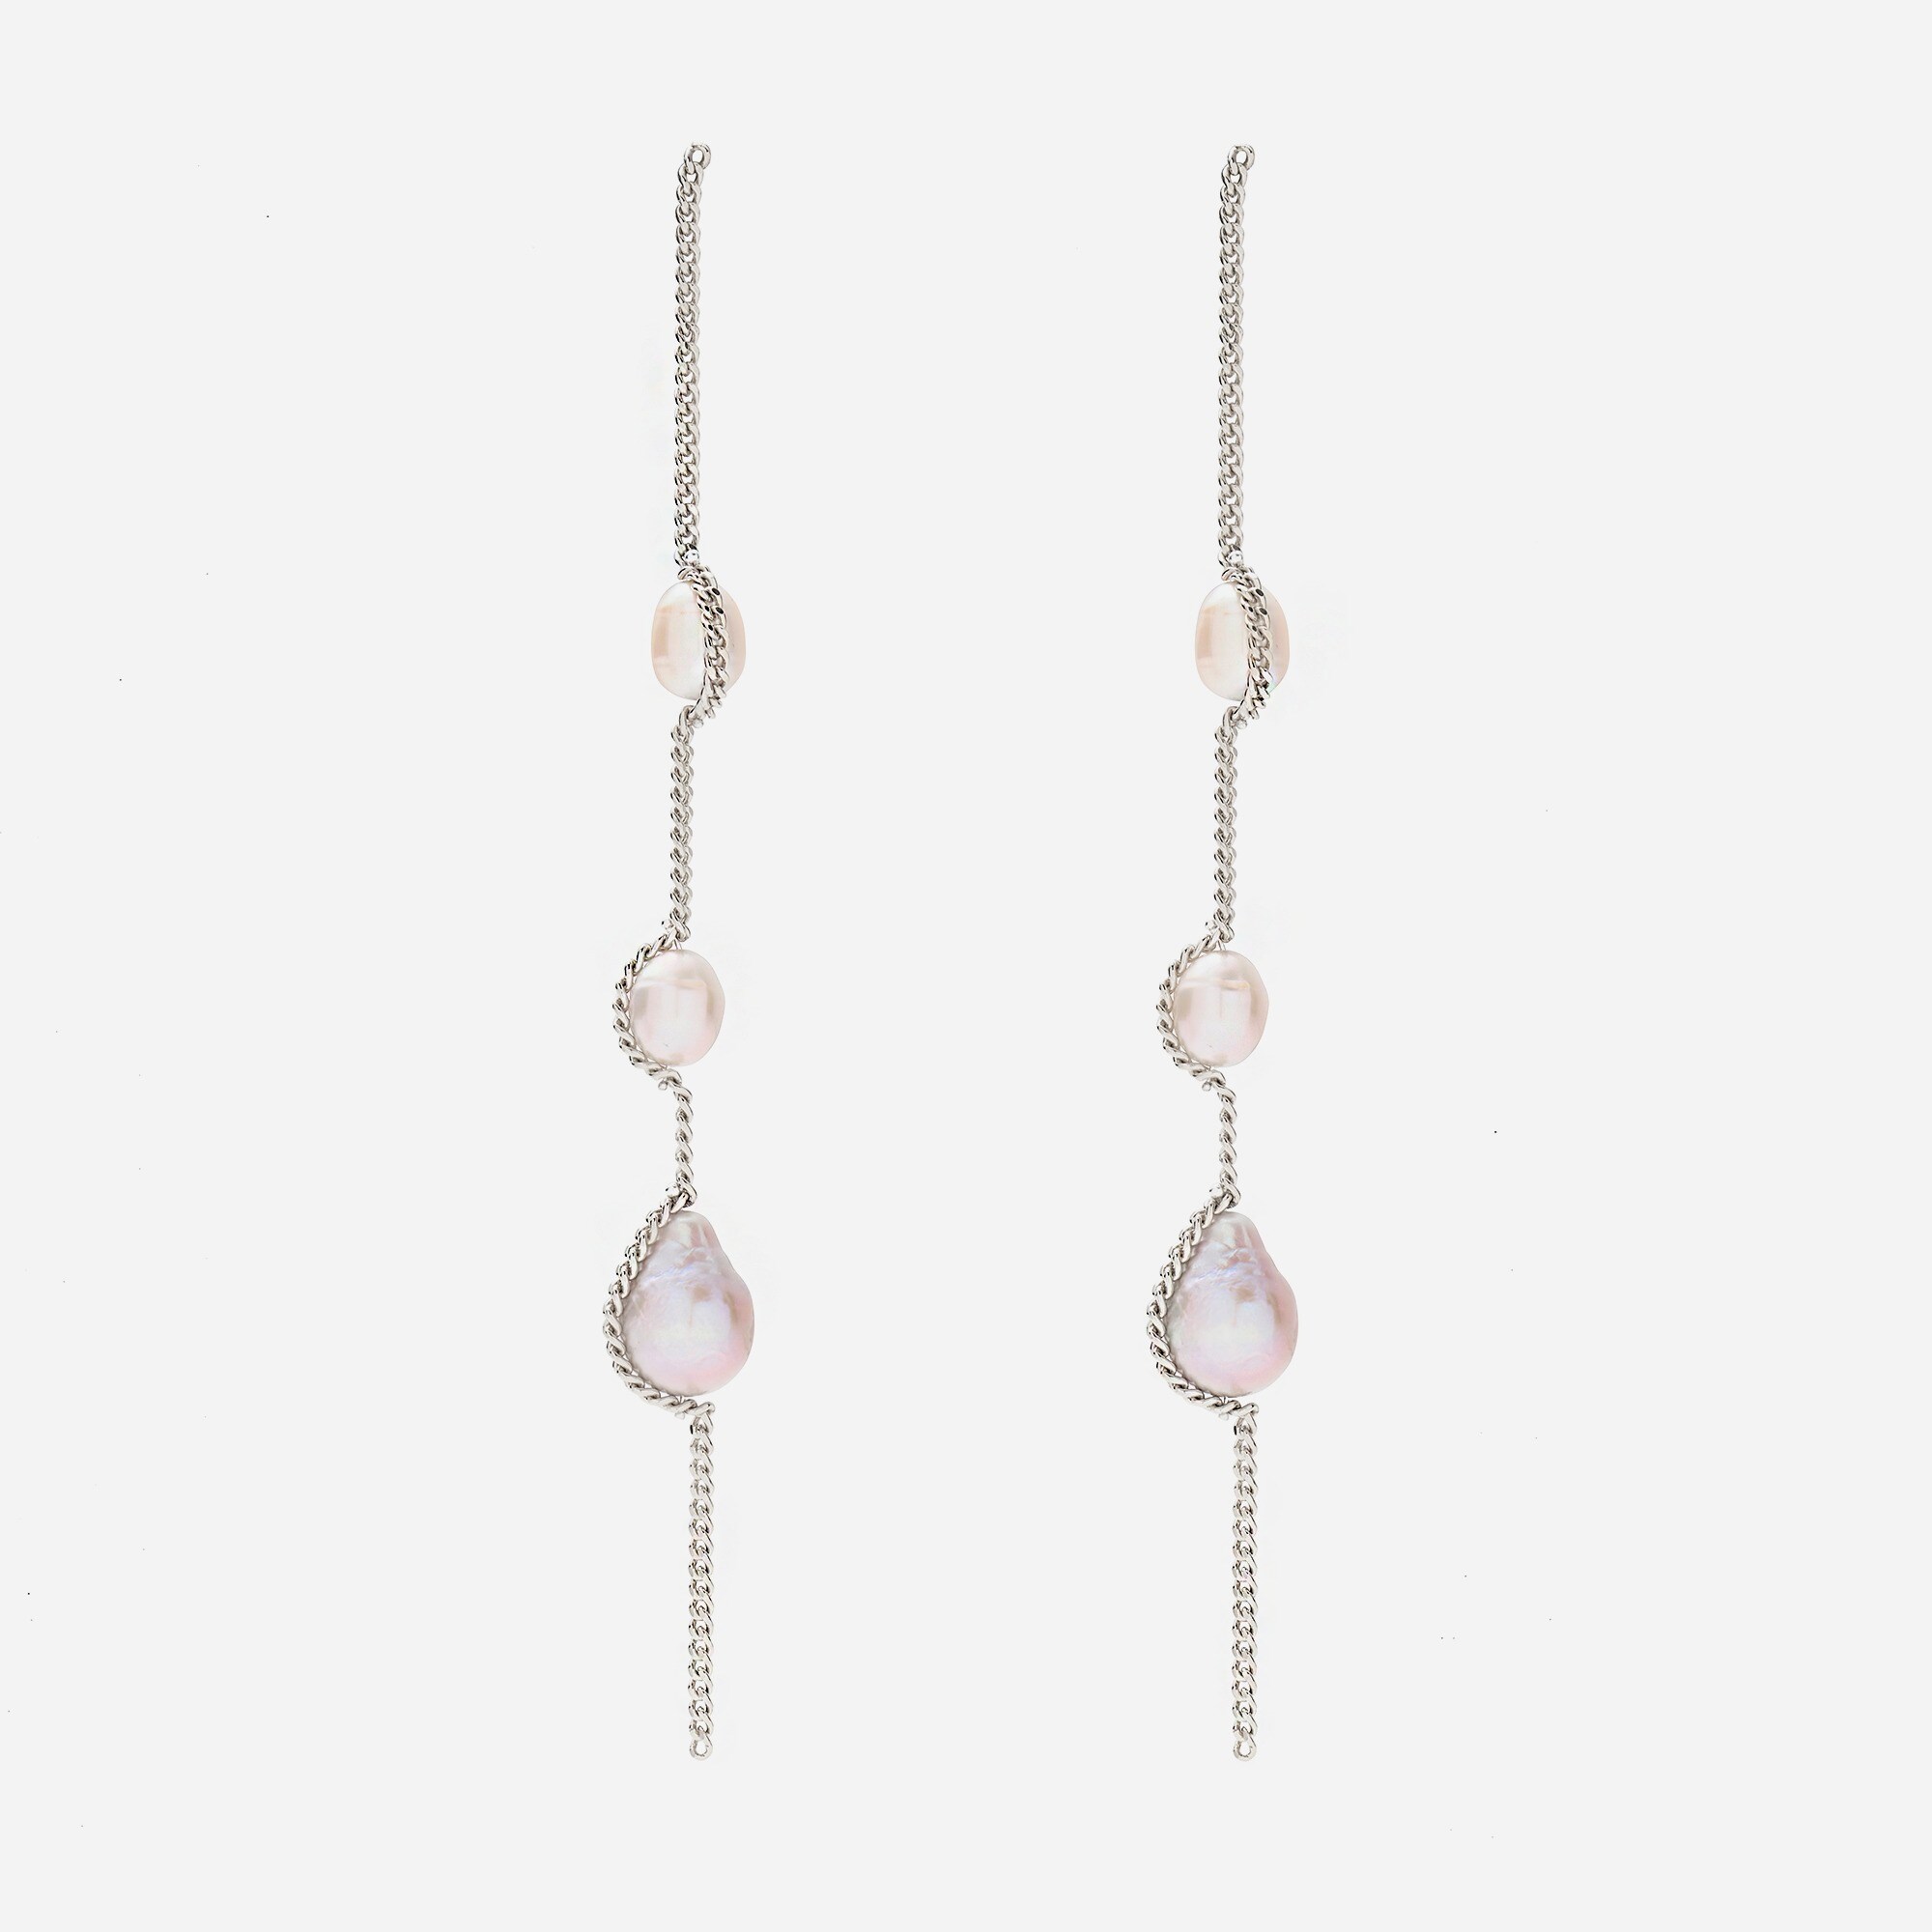  Lady Grey threaded pearl earrings